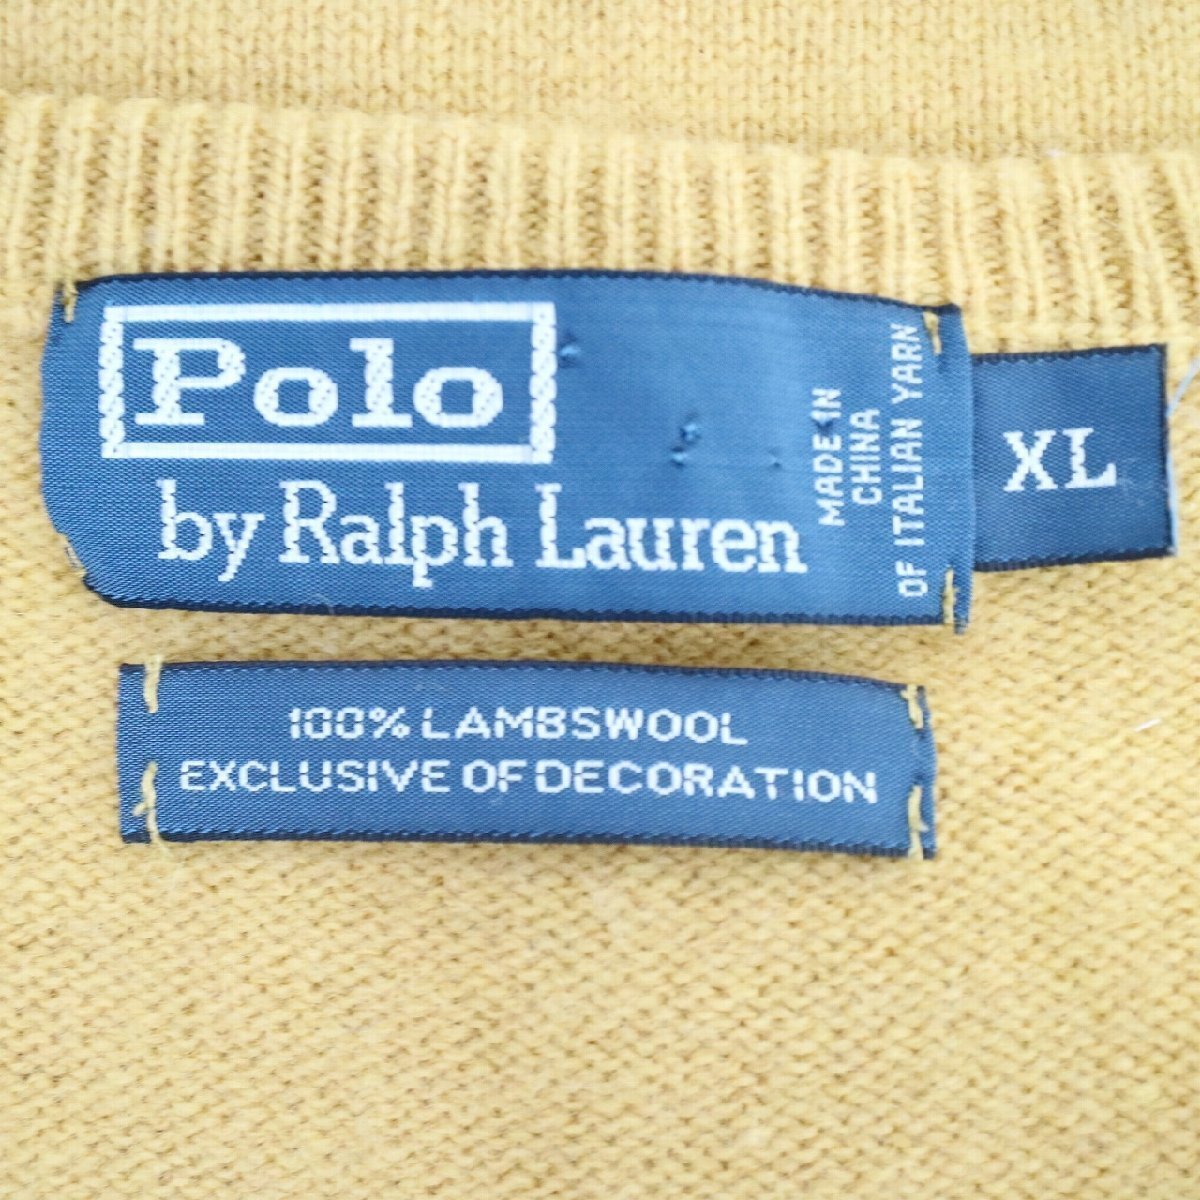 Polo by Ralph Lauren ラルフローレン Vネック ニット セーター ポニー ラムウール マスタード ( メンズ XL ) N2570 1円スタートの画像7